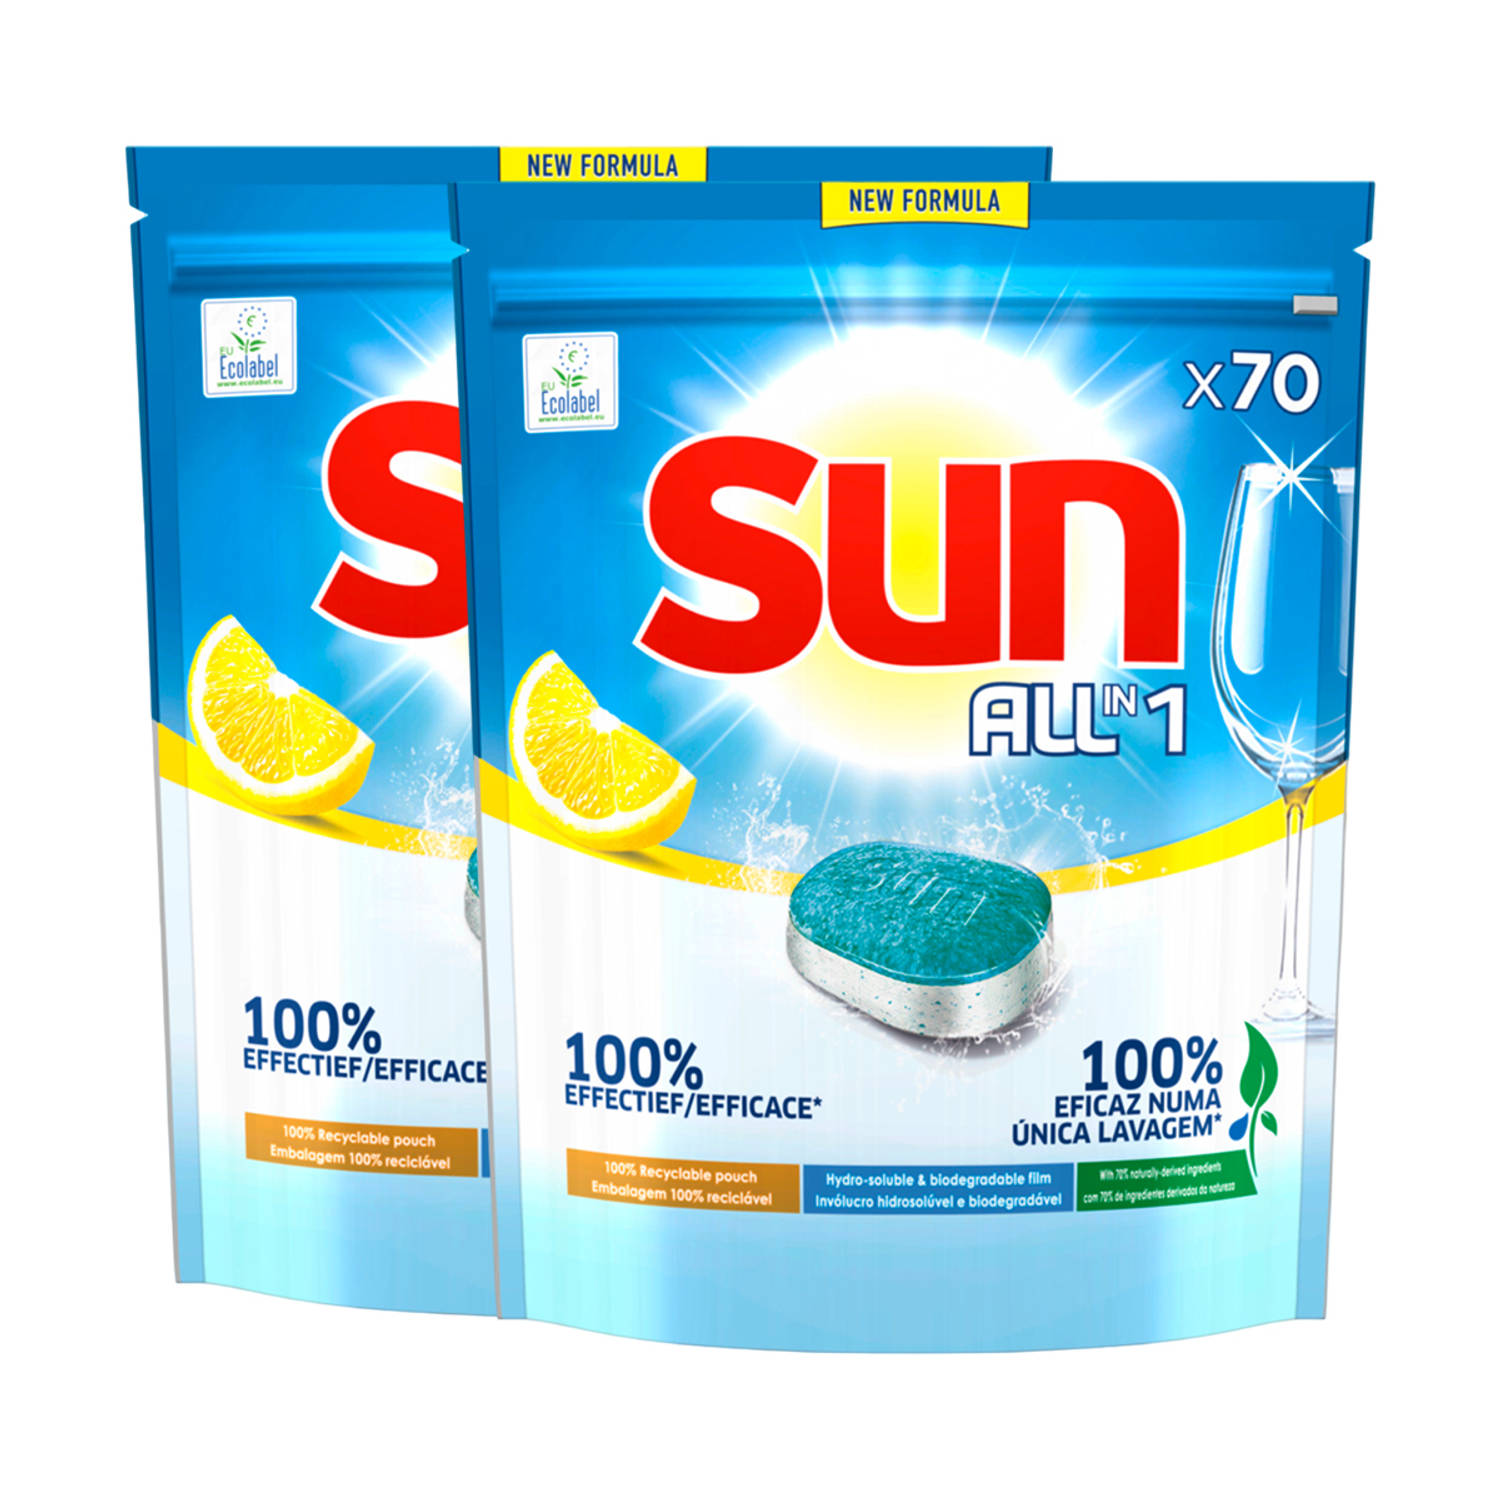 Sun All-in One - Vaatwastabletten - Citroen - 140 capsules - Voordeelverpakking - Halfjaarbox